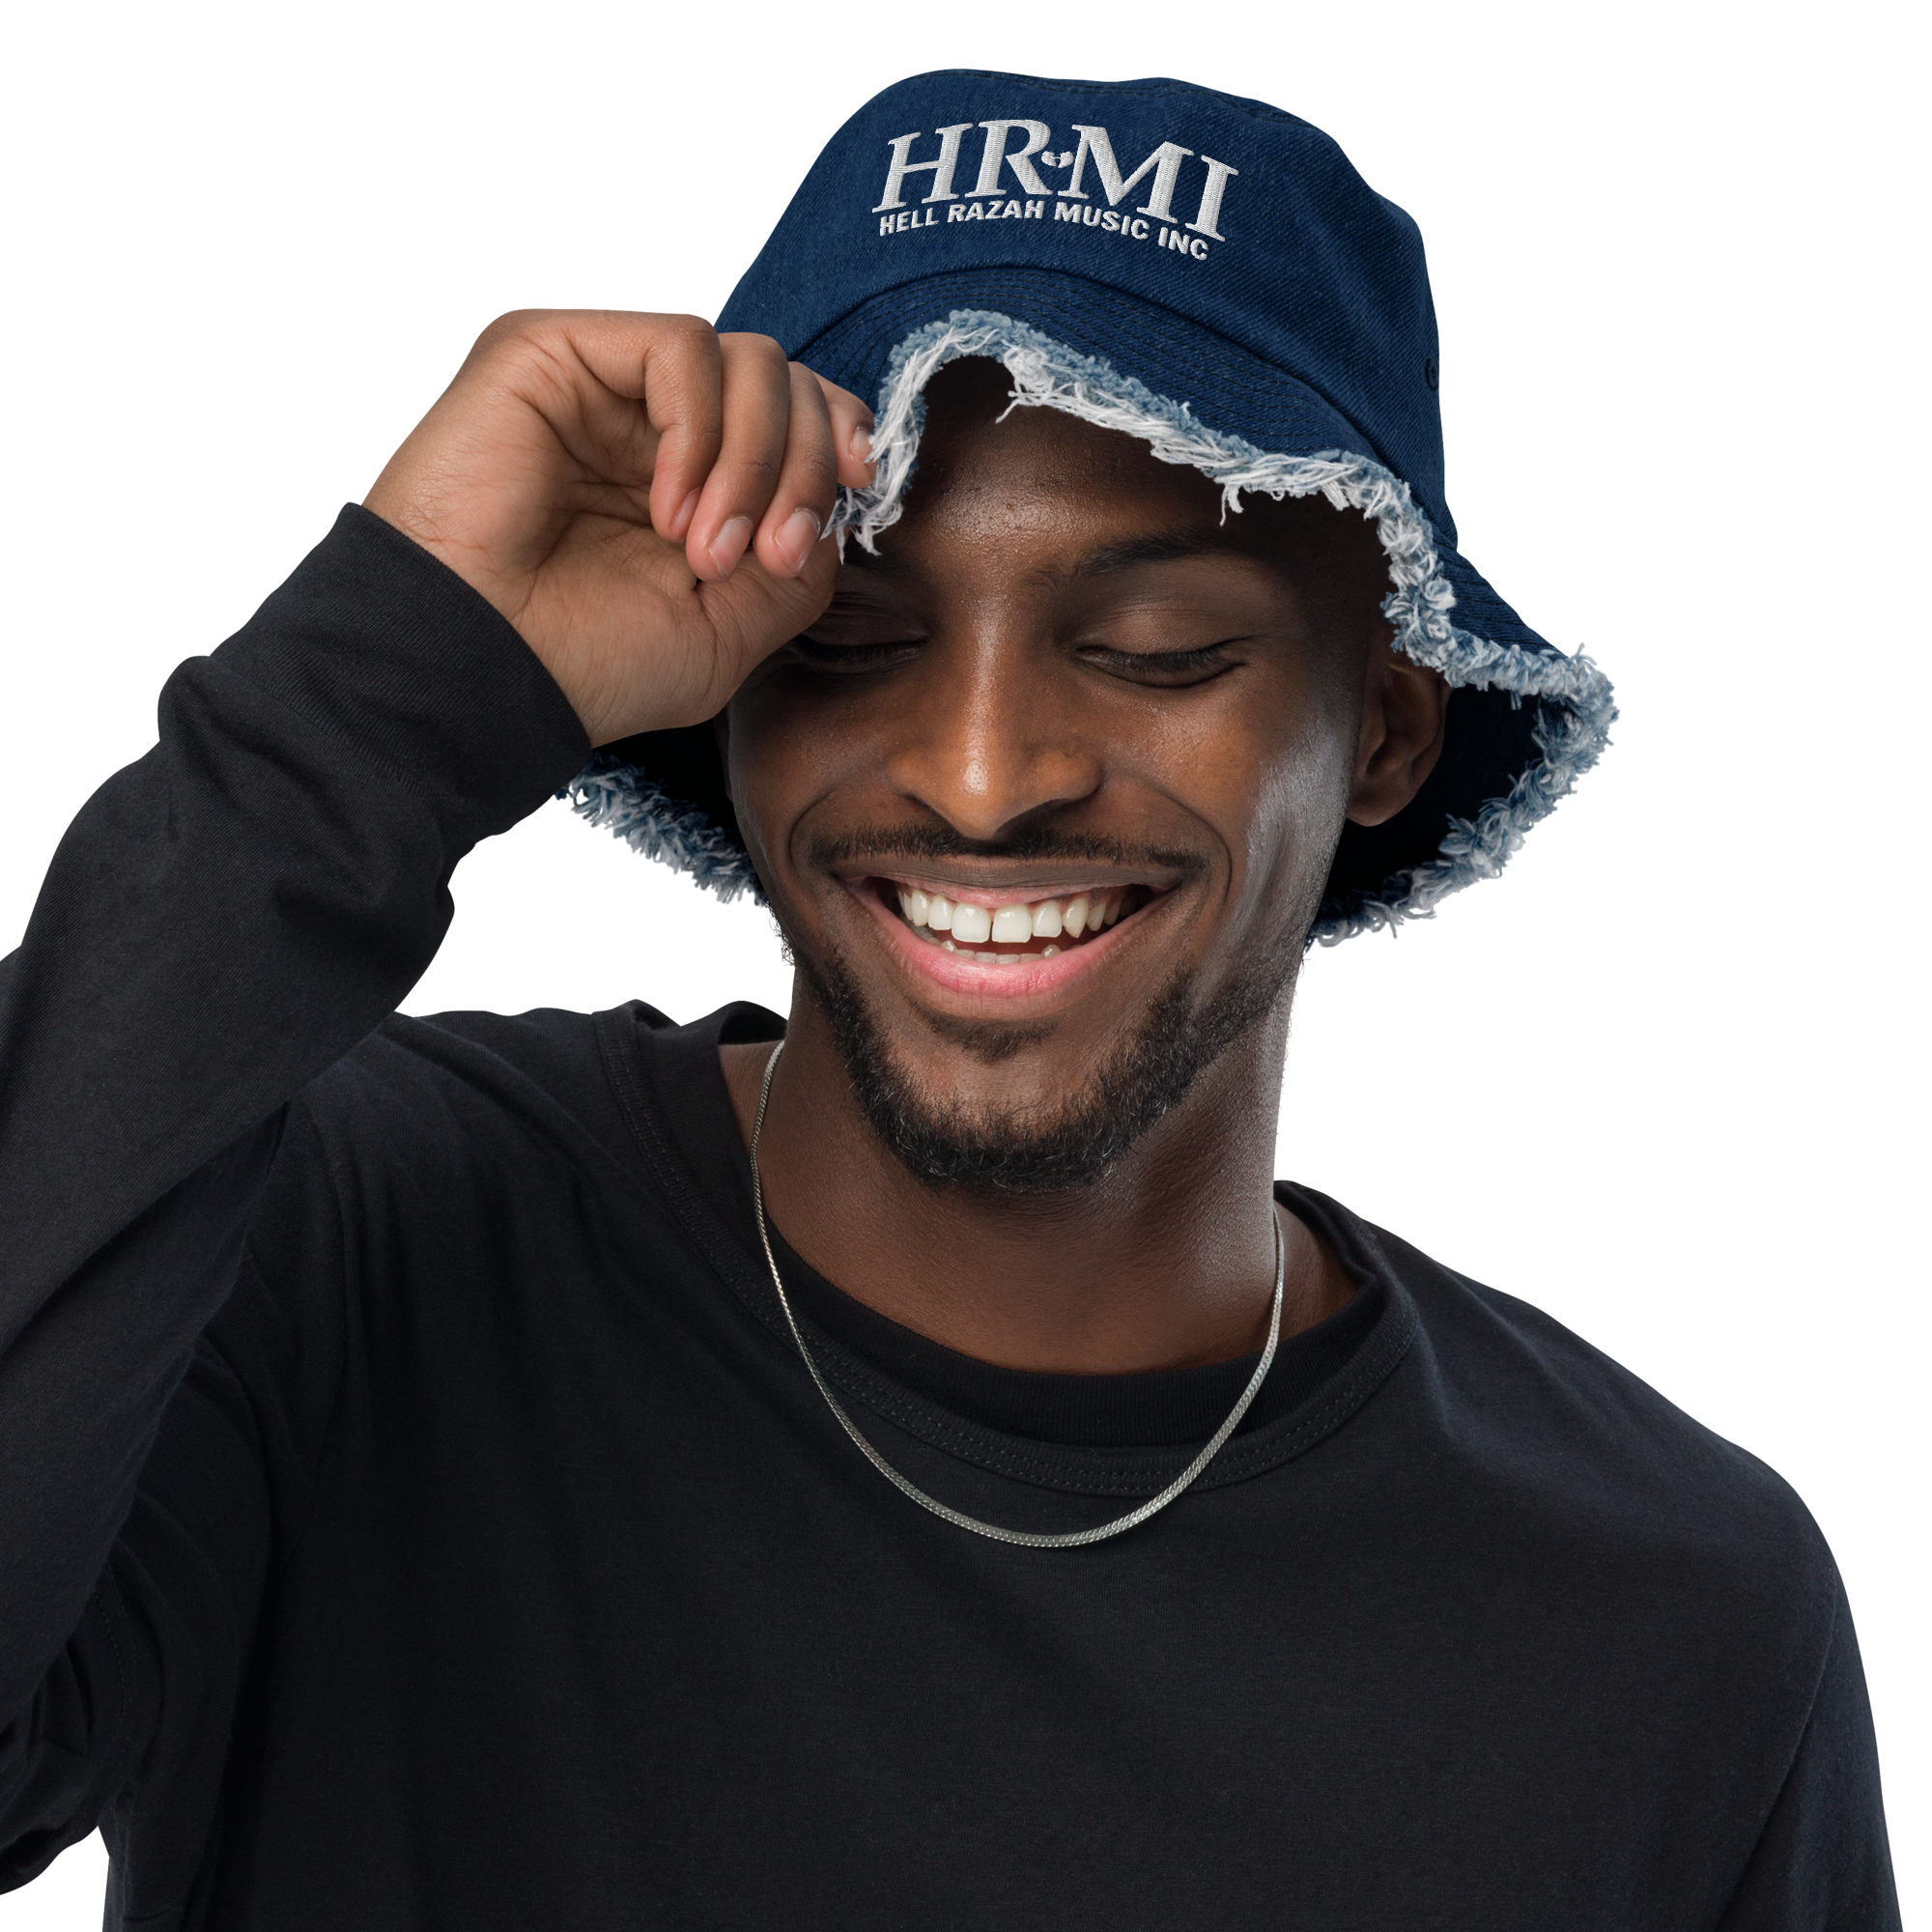 HRMI Embroidered Distressed Denim Bucket Hat